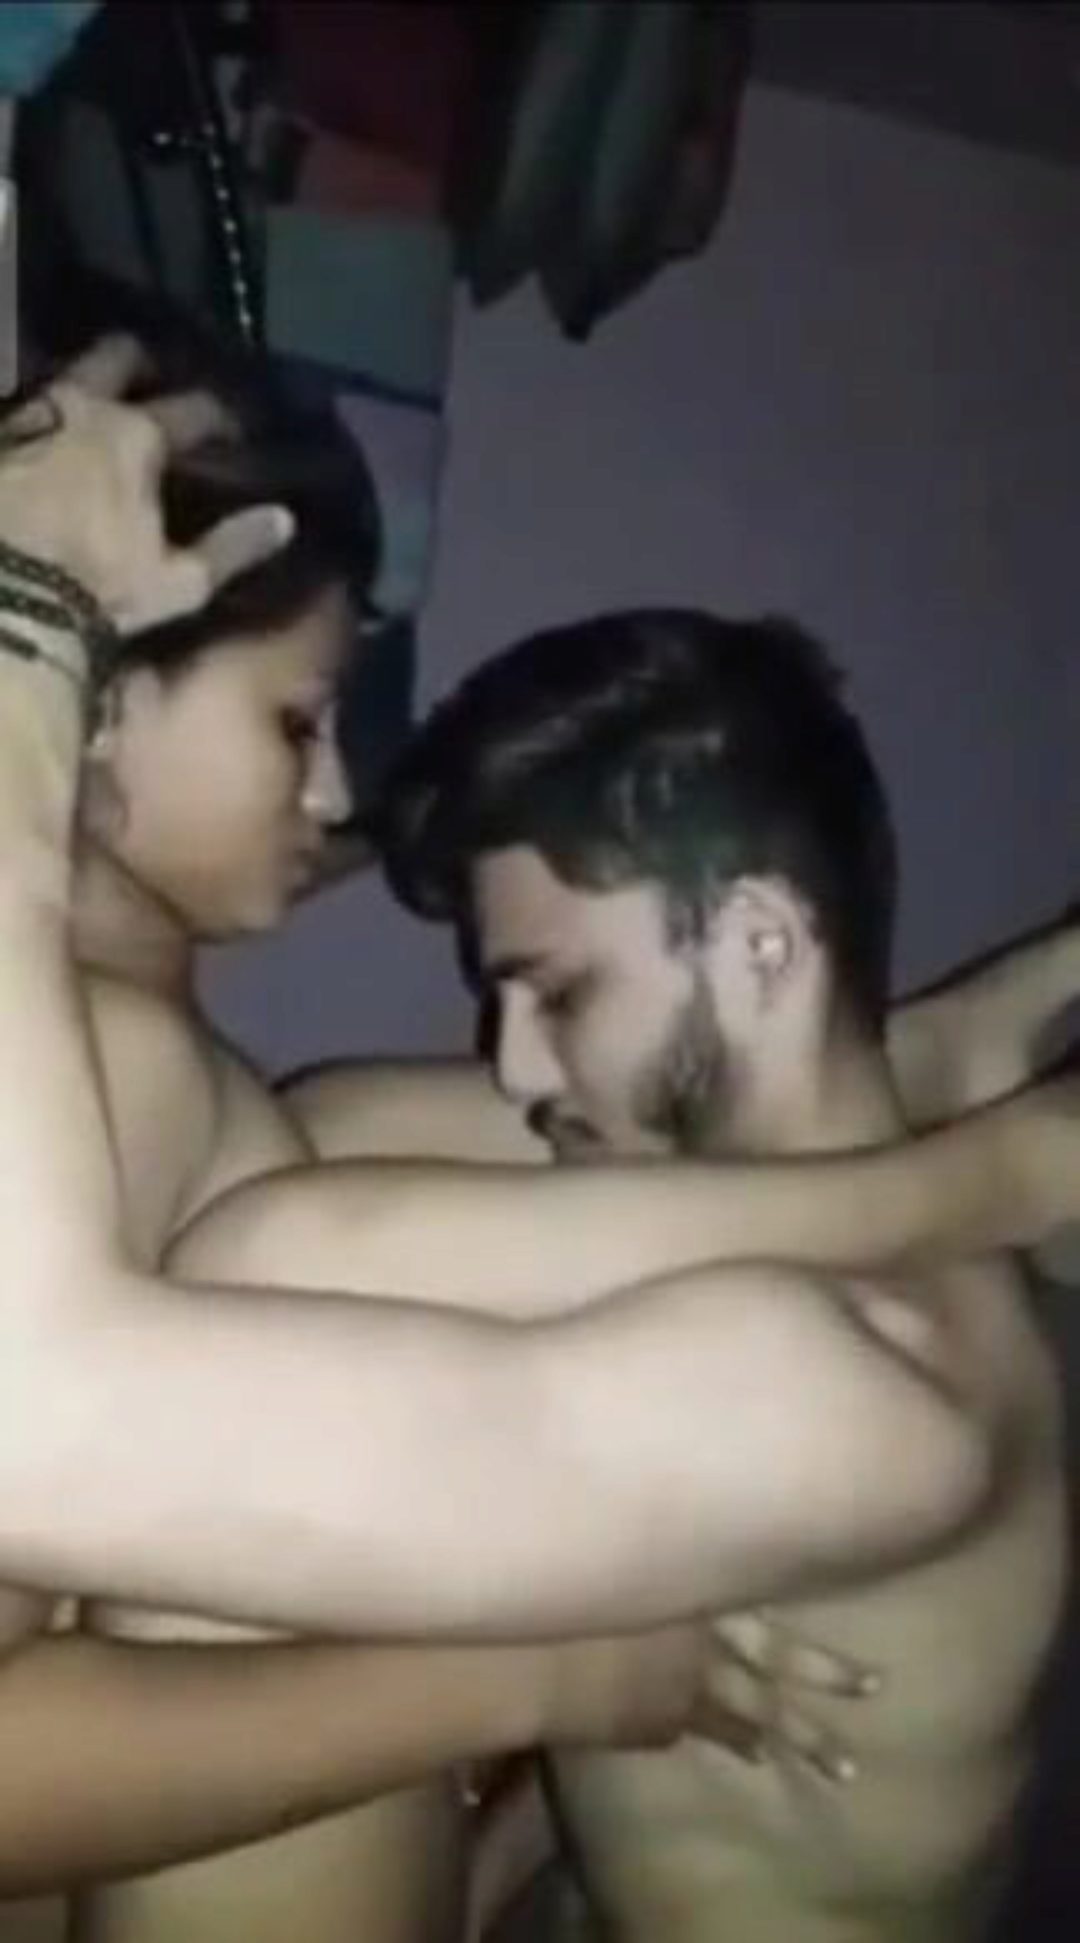 Xxx Muslim Hot Sex Bp - Muslim Boys Xxx With Muslim Girls Real Xxx Video - XXX BULE